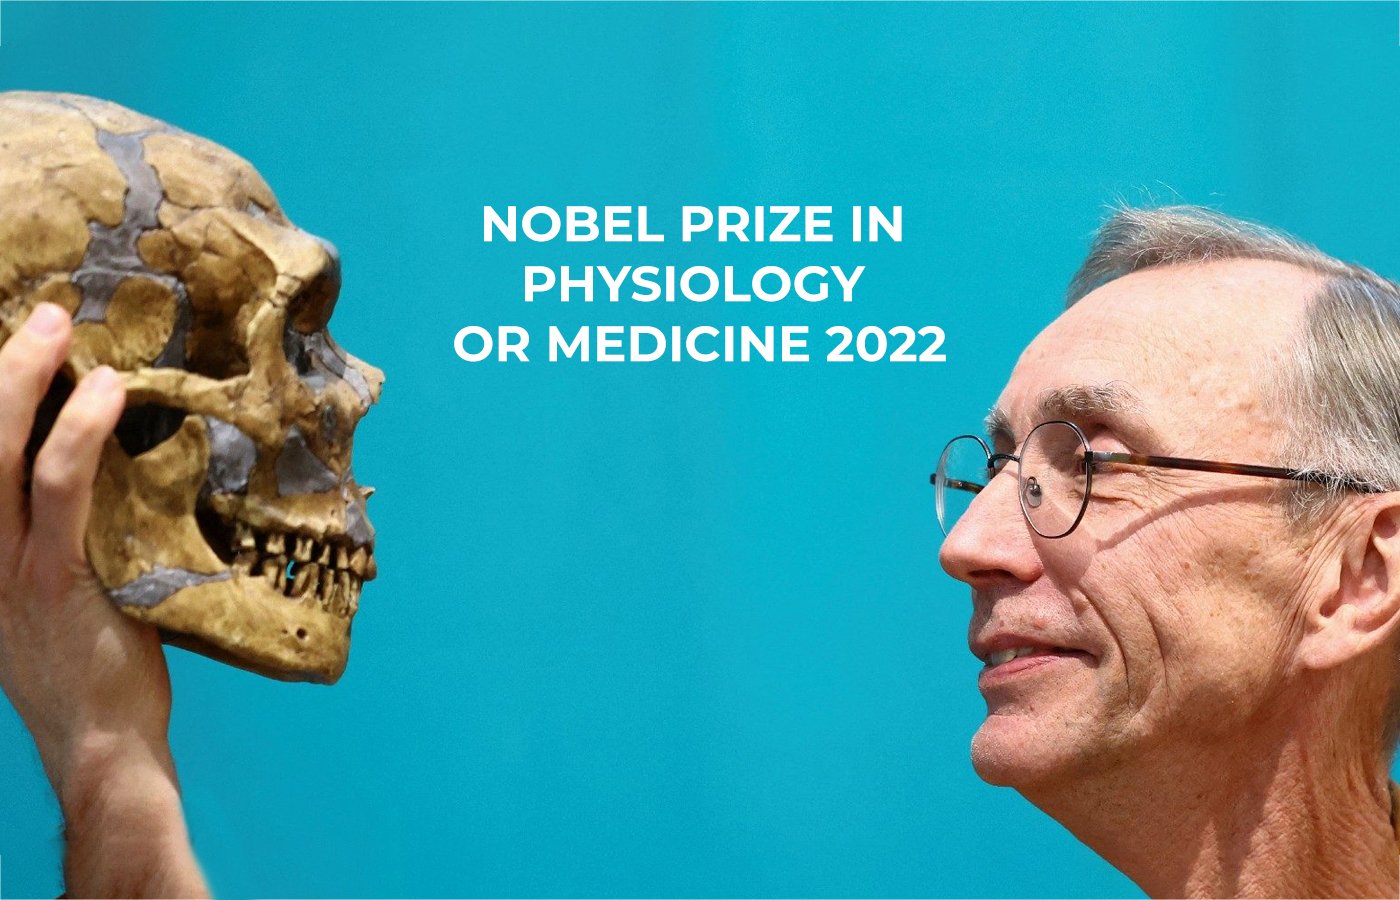 Nobel Prize in Medicine cover